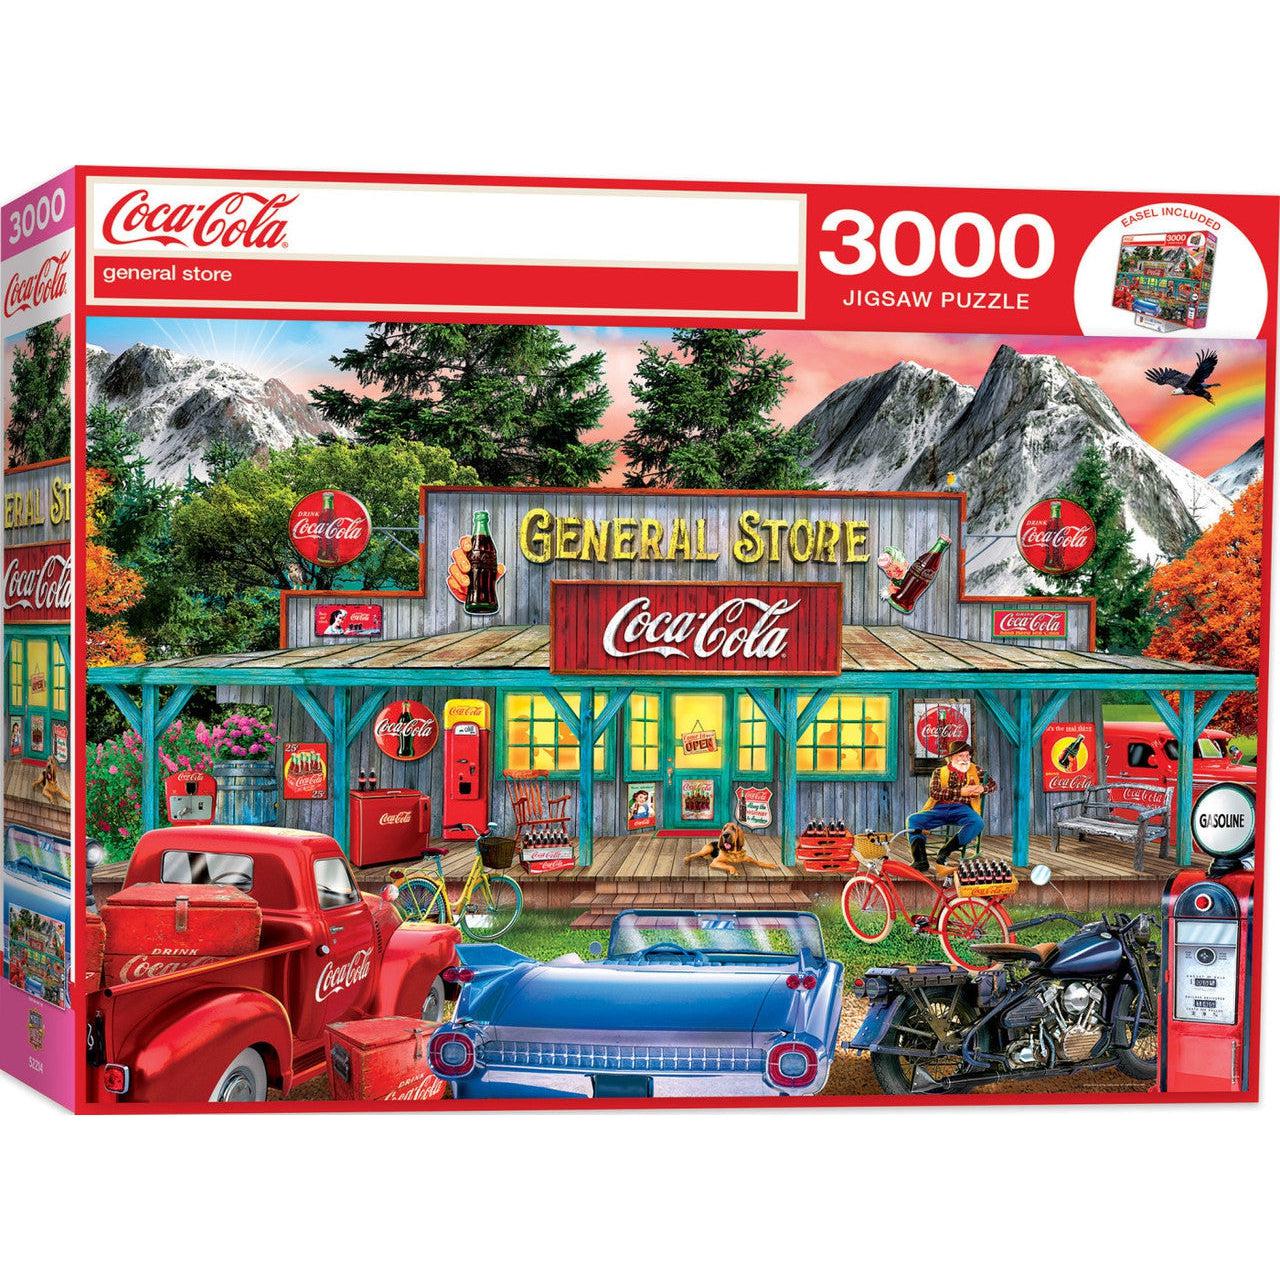 MasterPieces-Coca-Cola - General Store - 3000 Piece Puzzle-72290-Legacy Toys